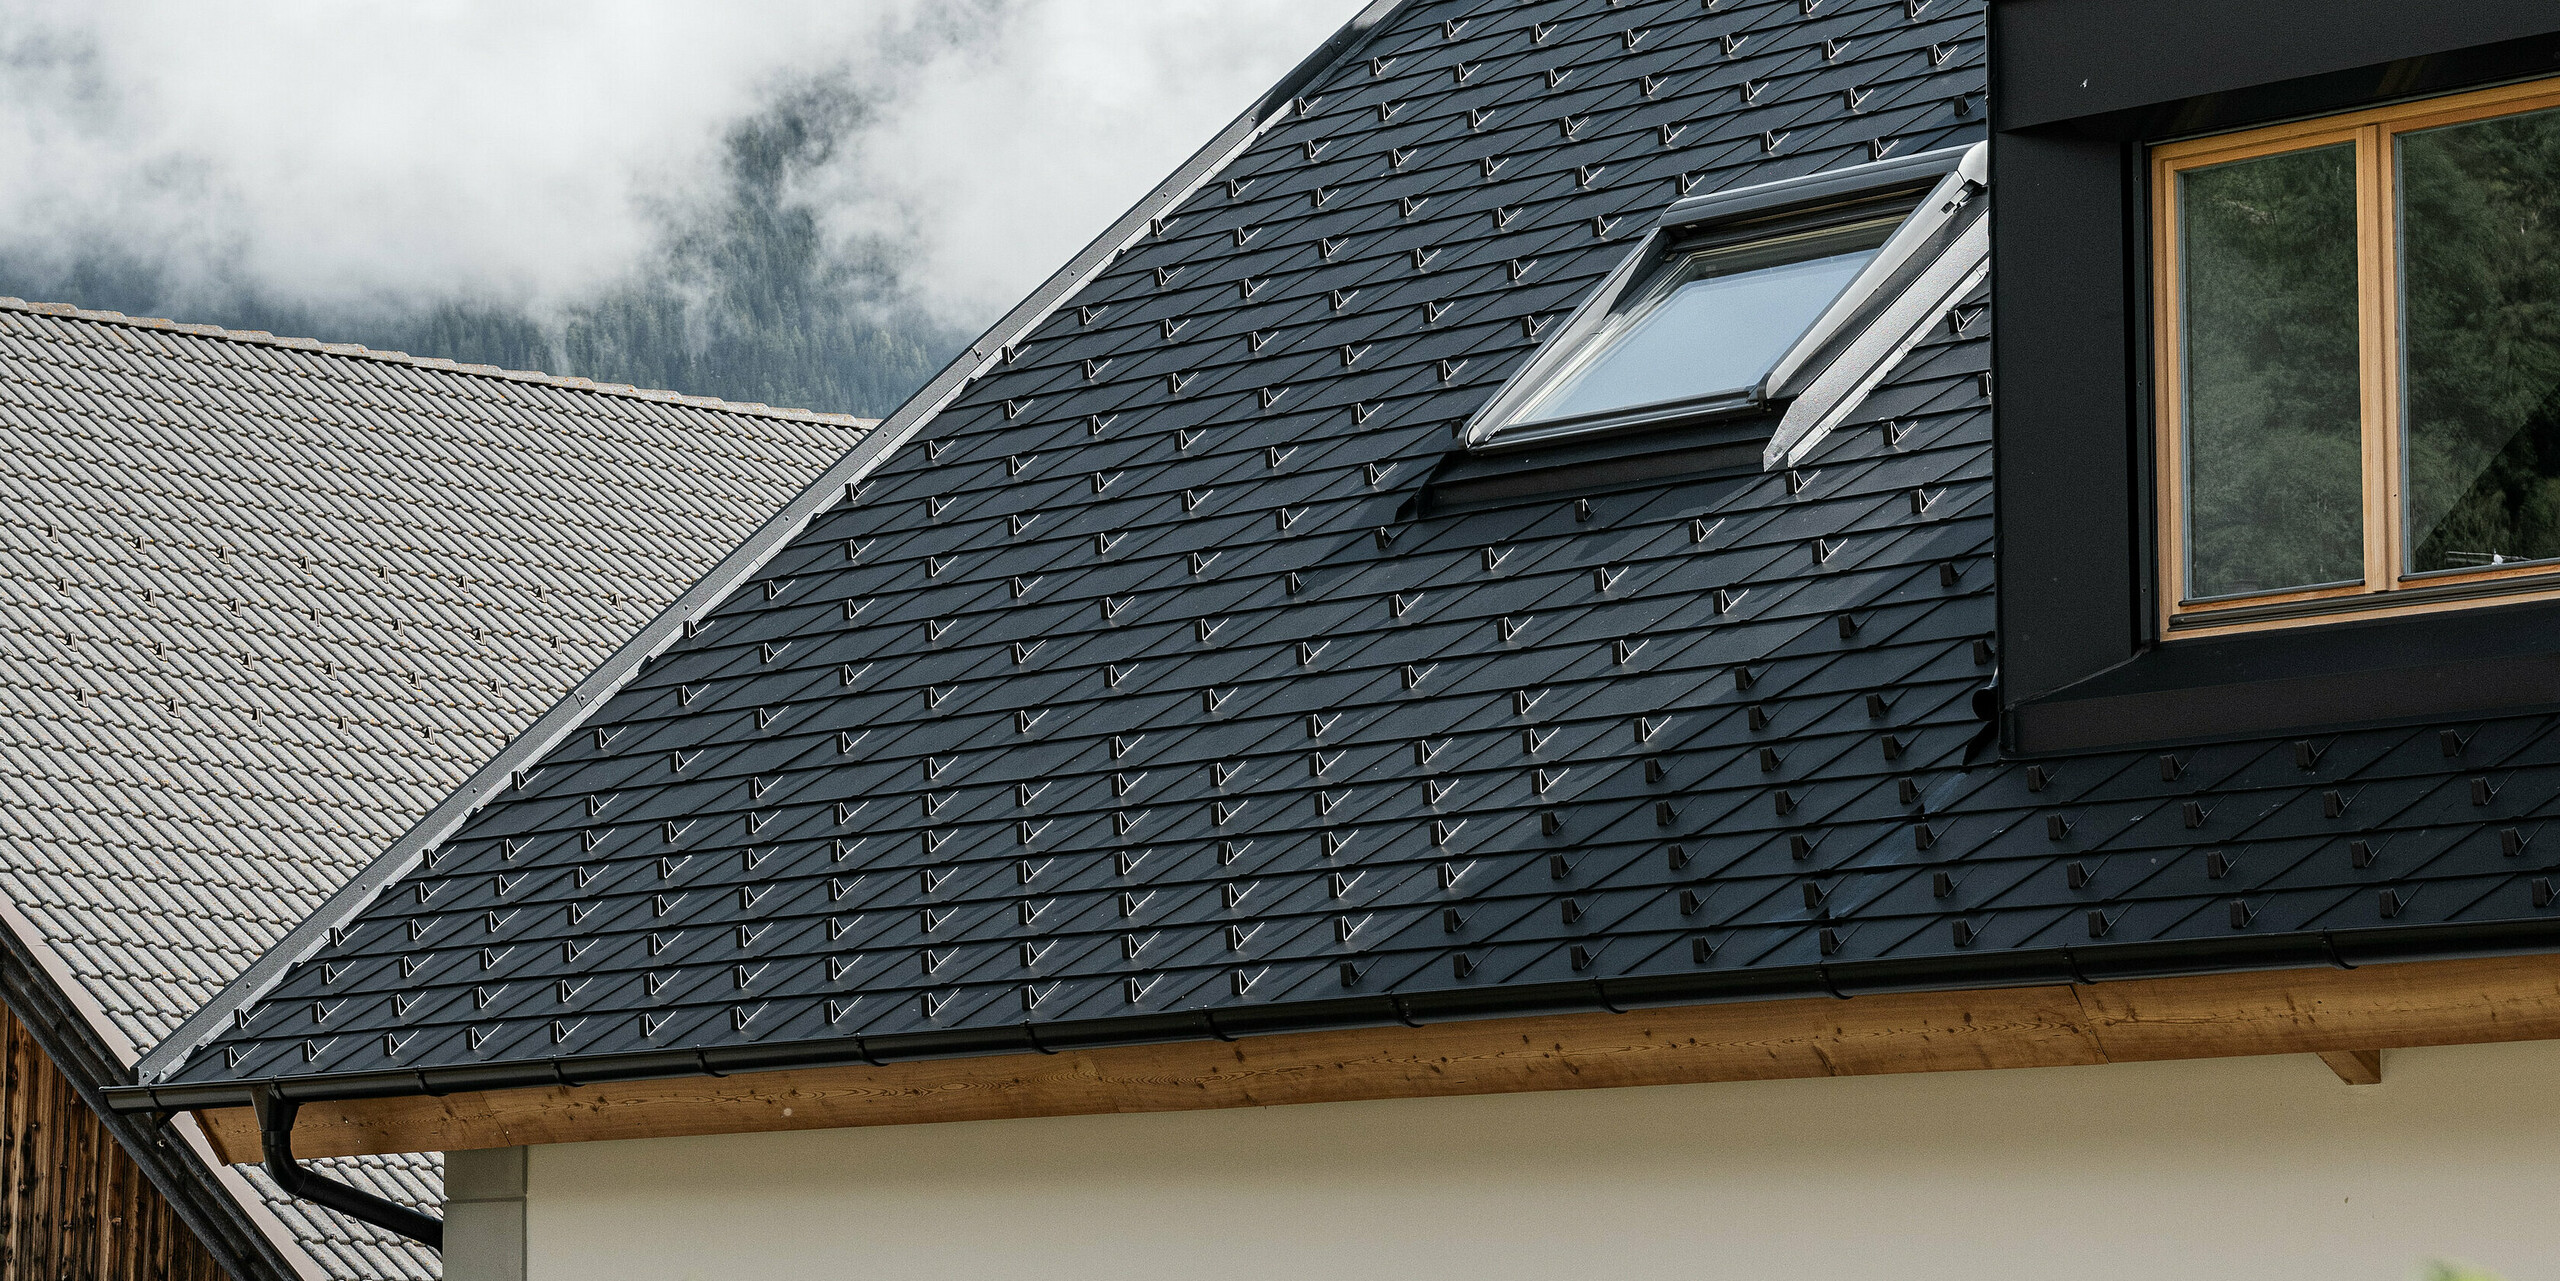 Detailní pohled na střešní systém PREFA odolný proti vichřici a povětrnostním vlivům. Sedlová střecha Ausserwegerhof v Jižním Tyrolsku byla vybavena robustními střešními šindely PREAF DS.19 v barvě P.10 antracit. Estetické řešení střechy je obklopeno působivou horskou kulisou údolí Antholz.